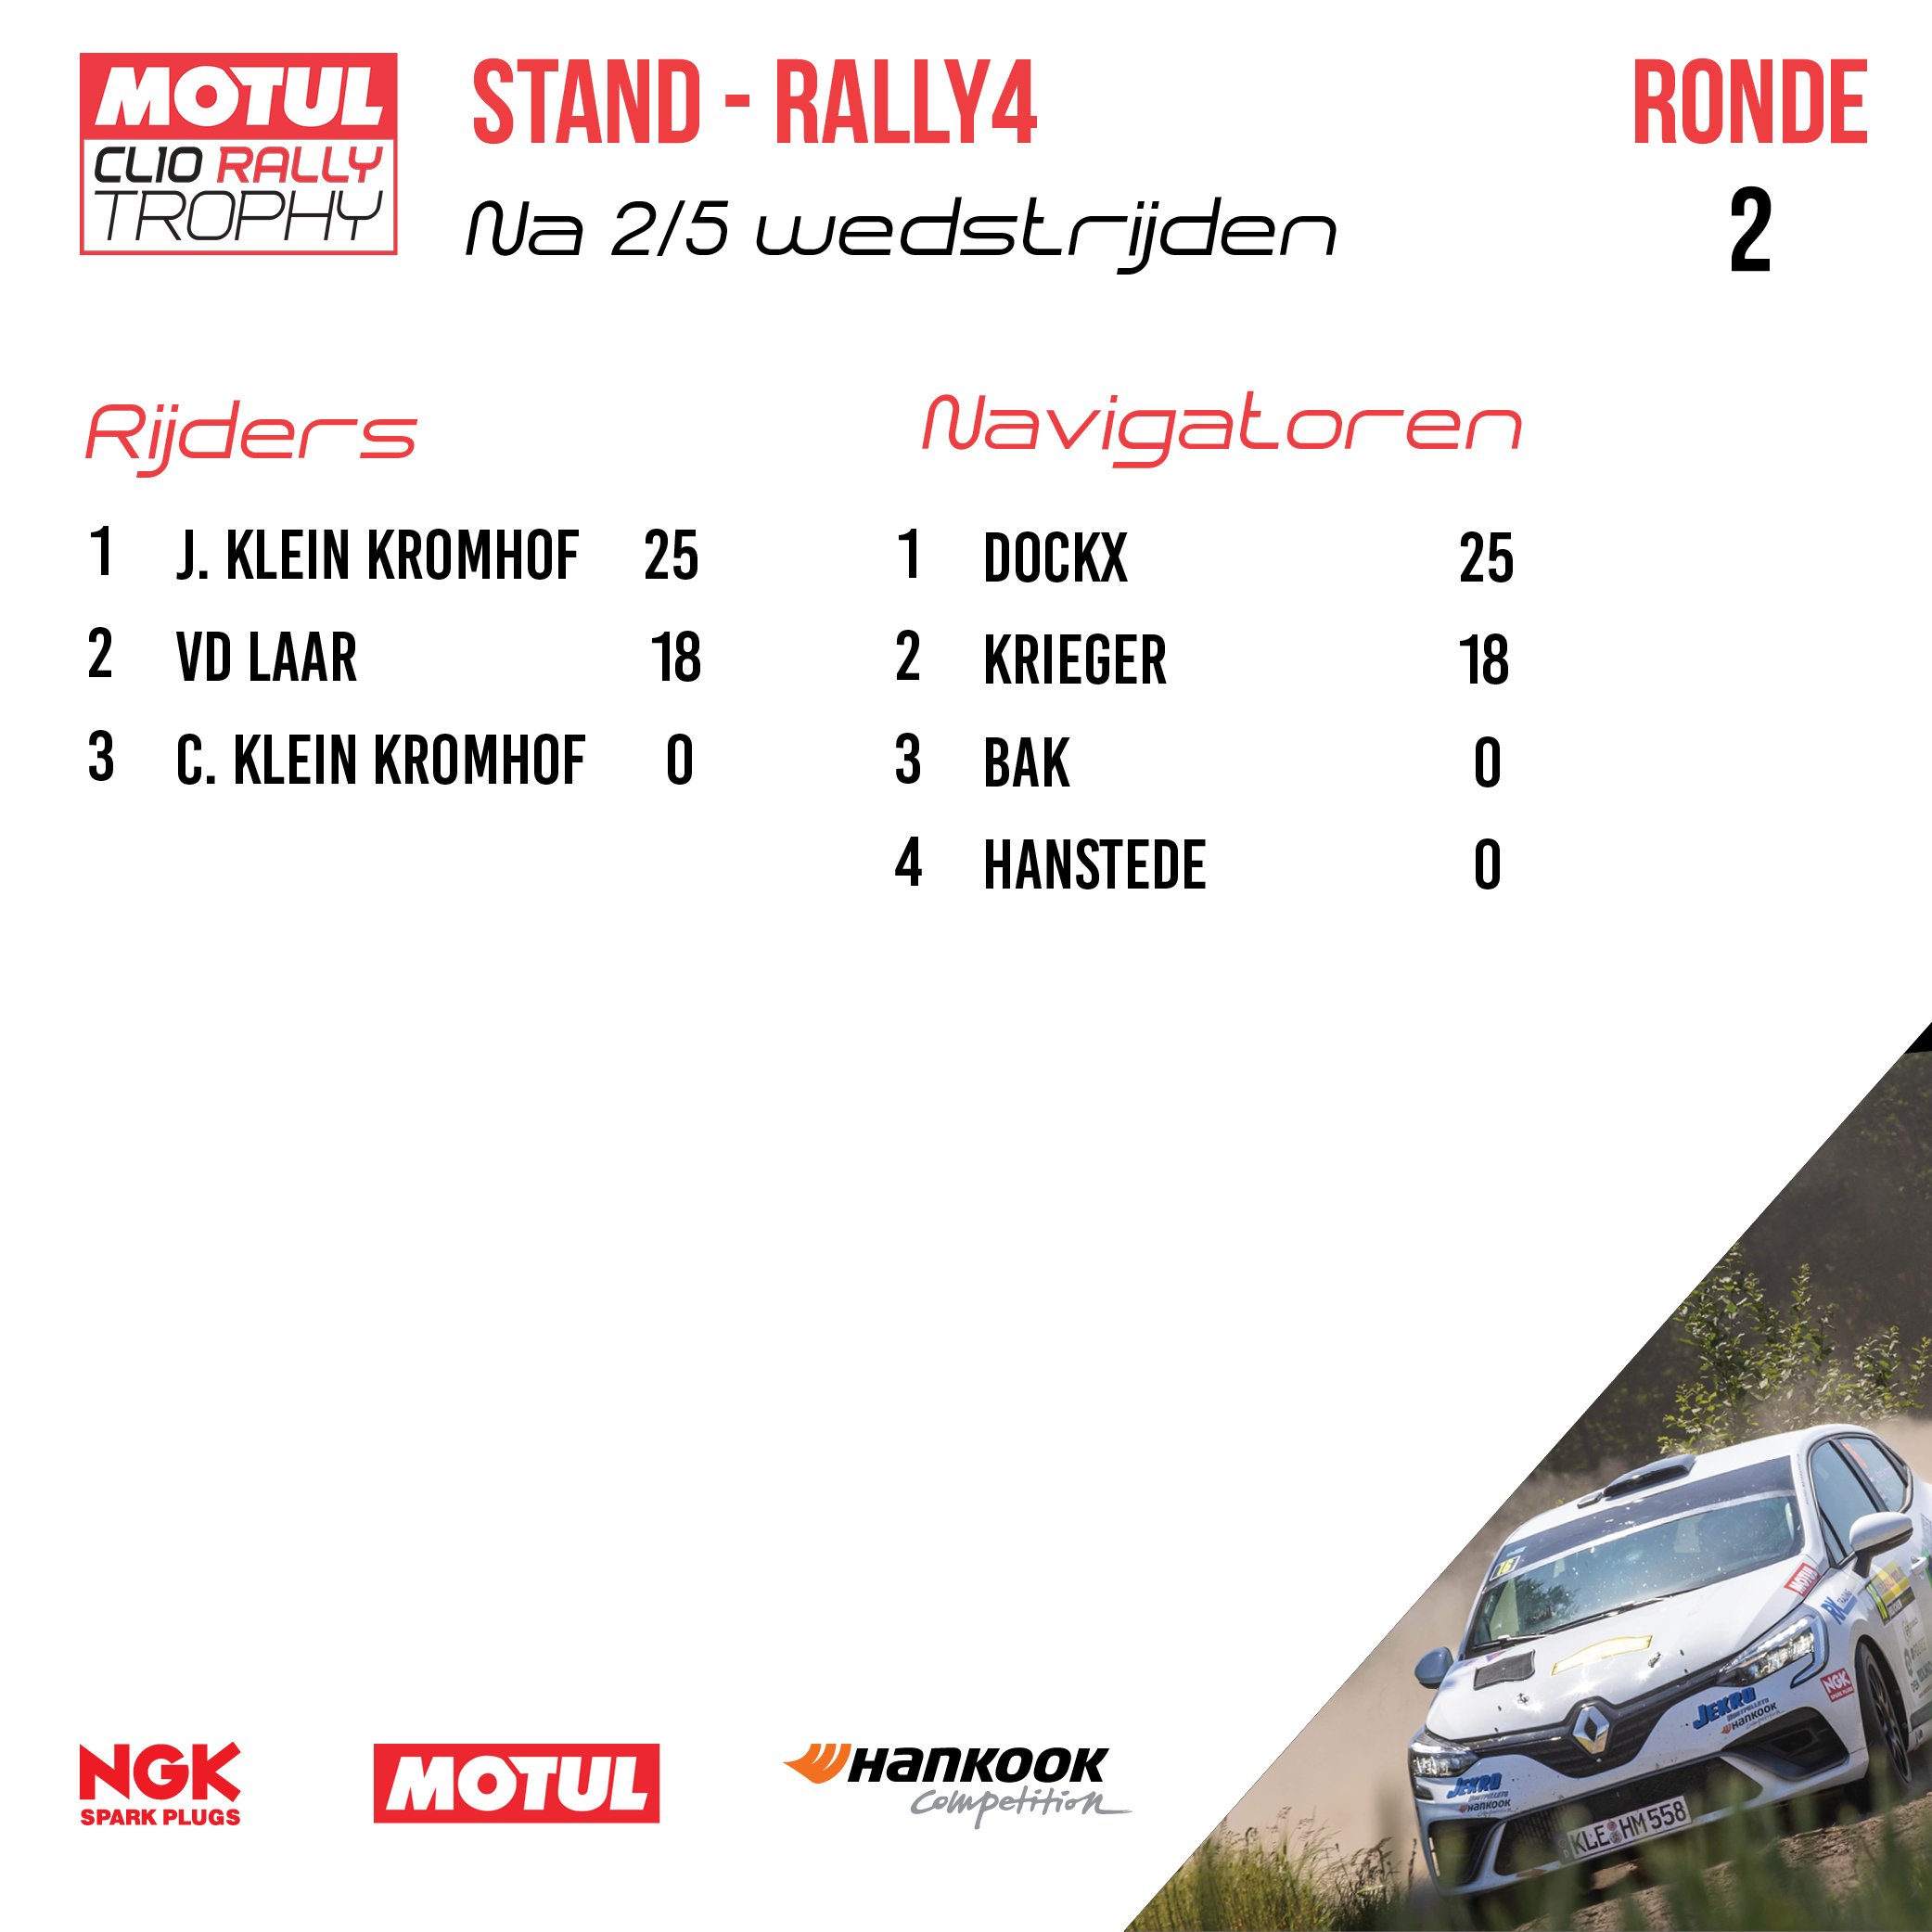 02 - ELE - Stand kampioenschap Rally4.jpg